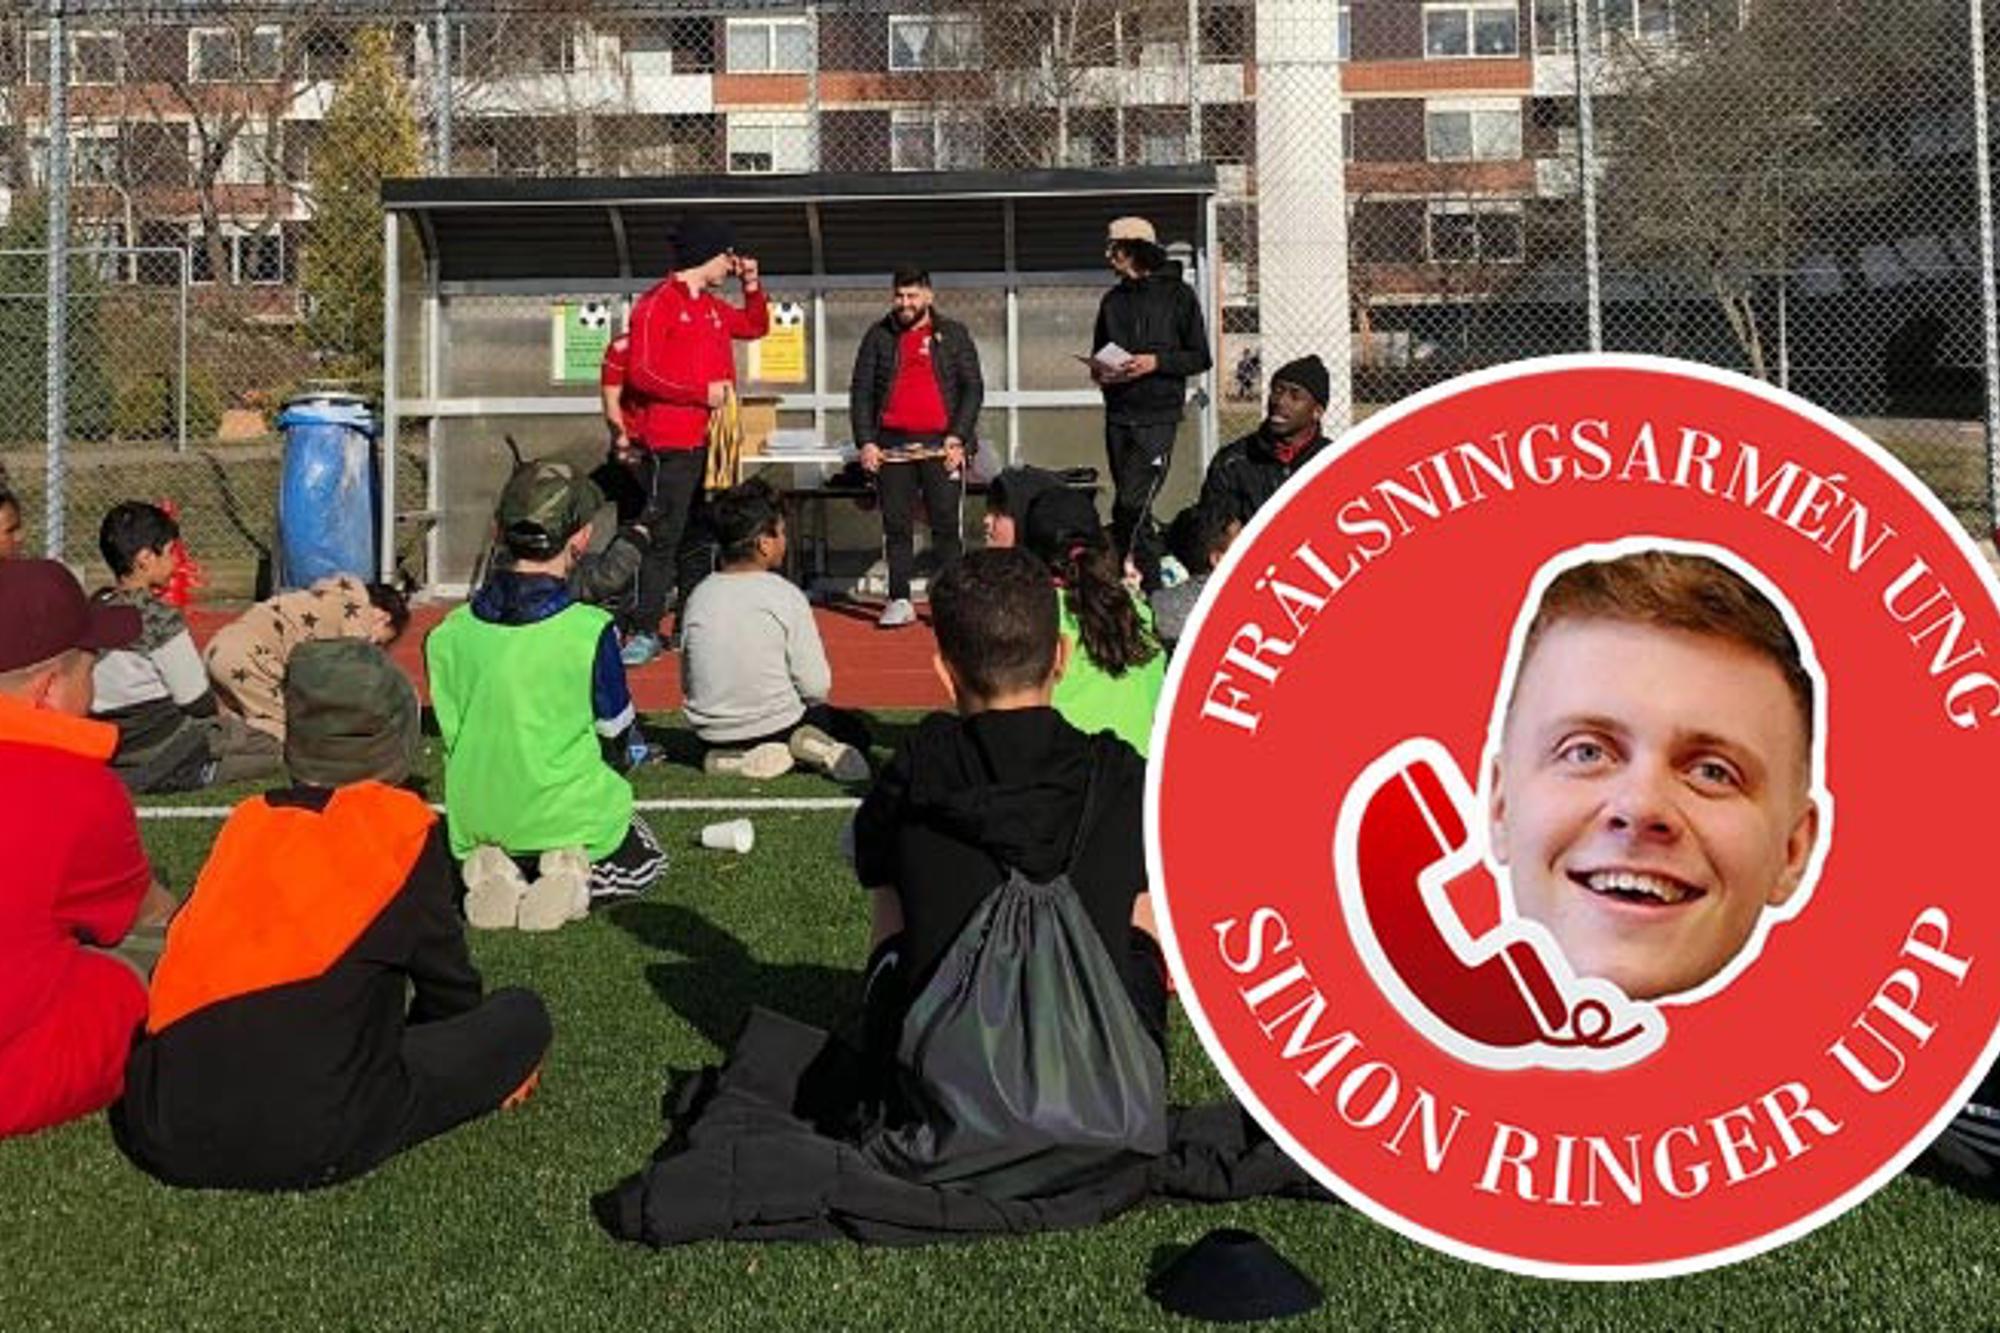 Ett gäng barn och aktivitetsledare samlade på en fotbollsplan. Bilden har en röd logga på sig med texten "Frälsningsarmén Ung. Simon Ringer Upp".